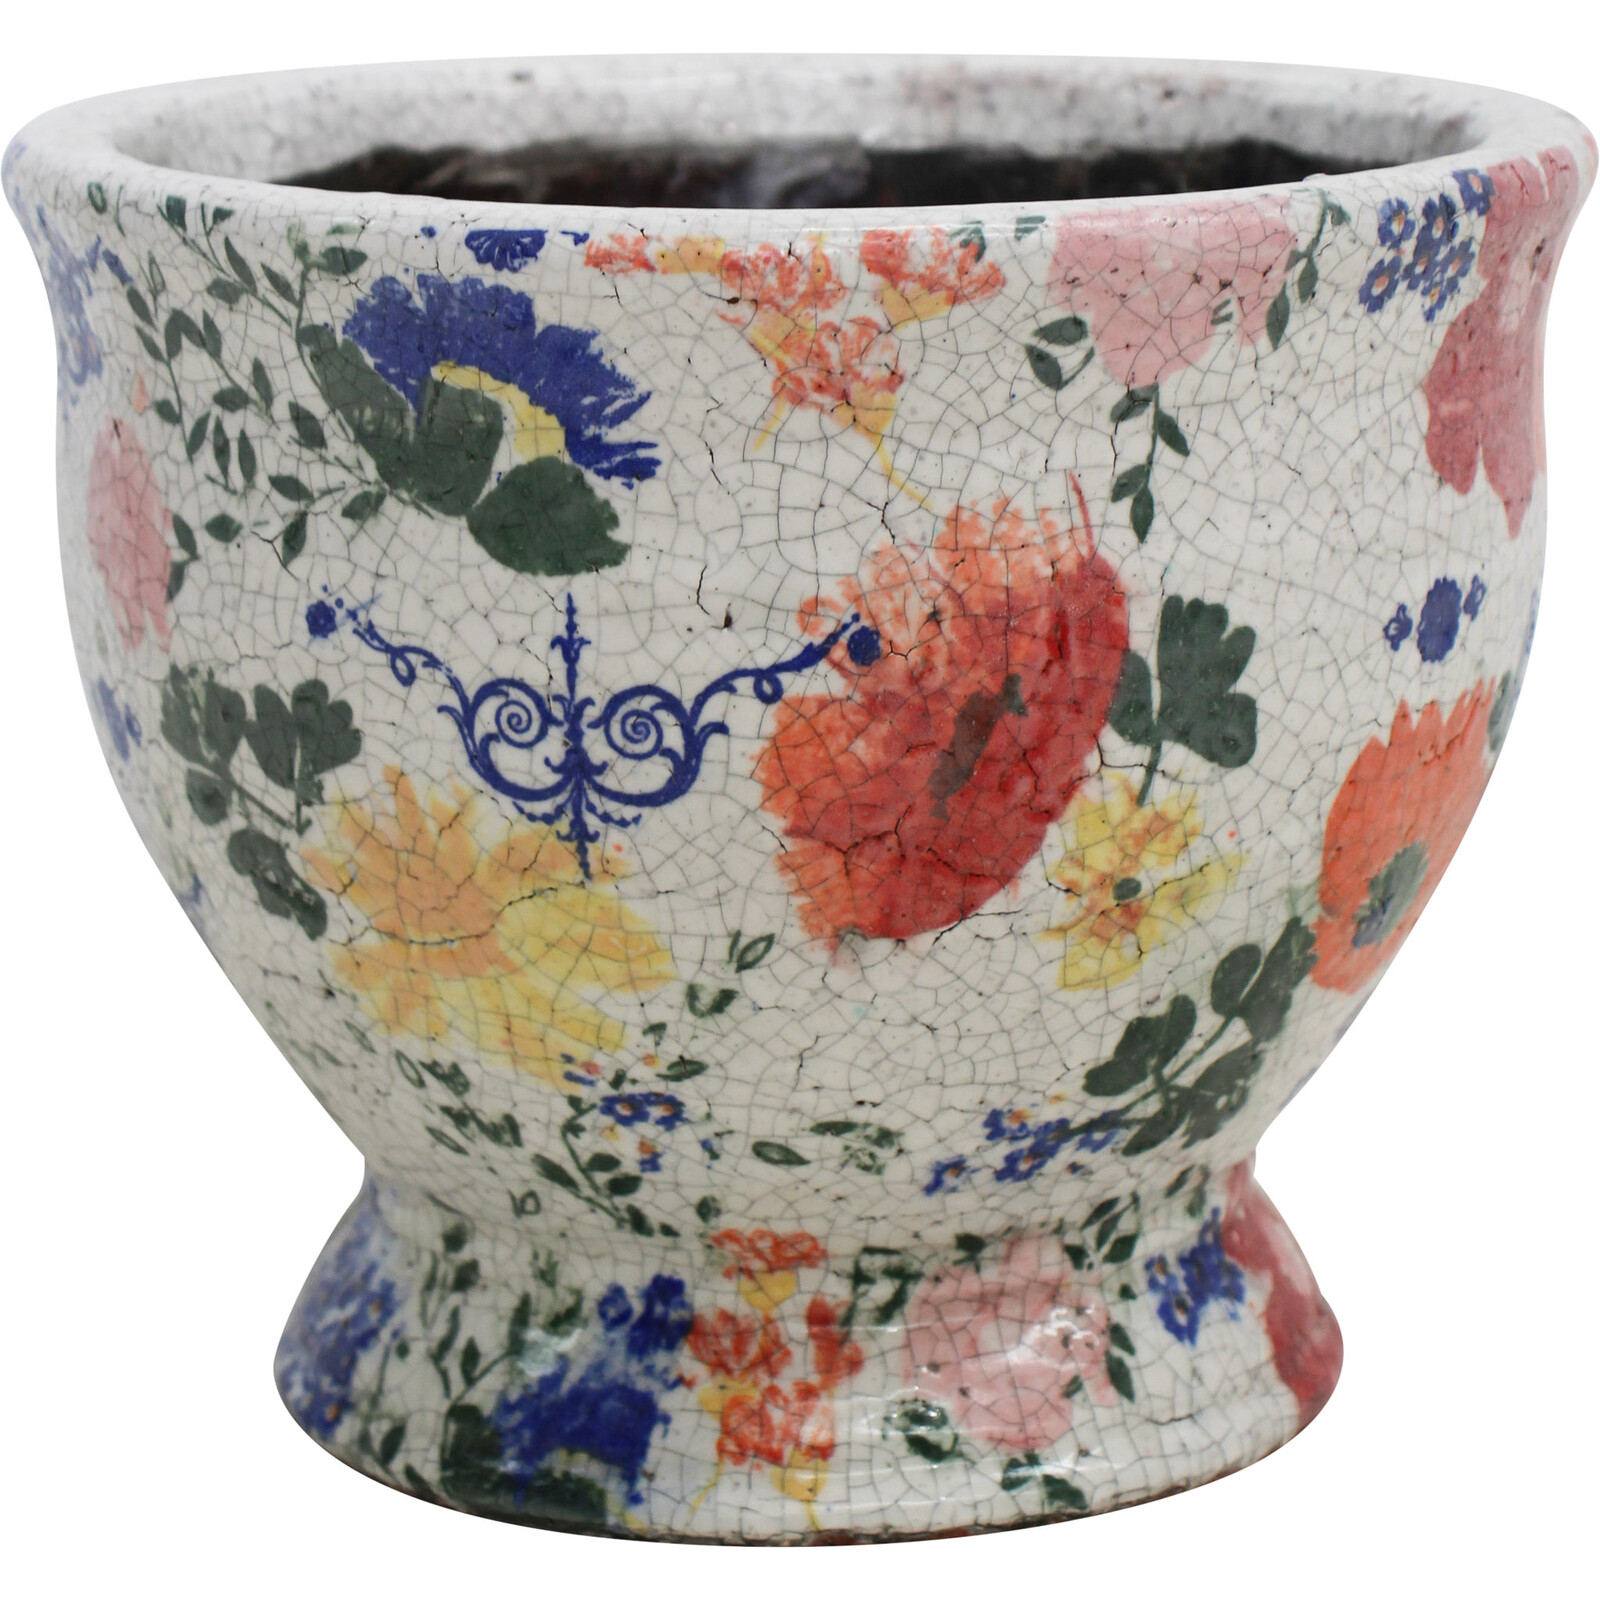 Pot Urn Lrg Antique Floral